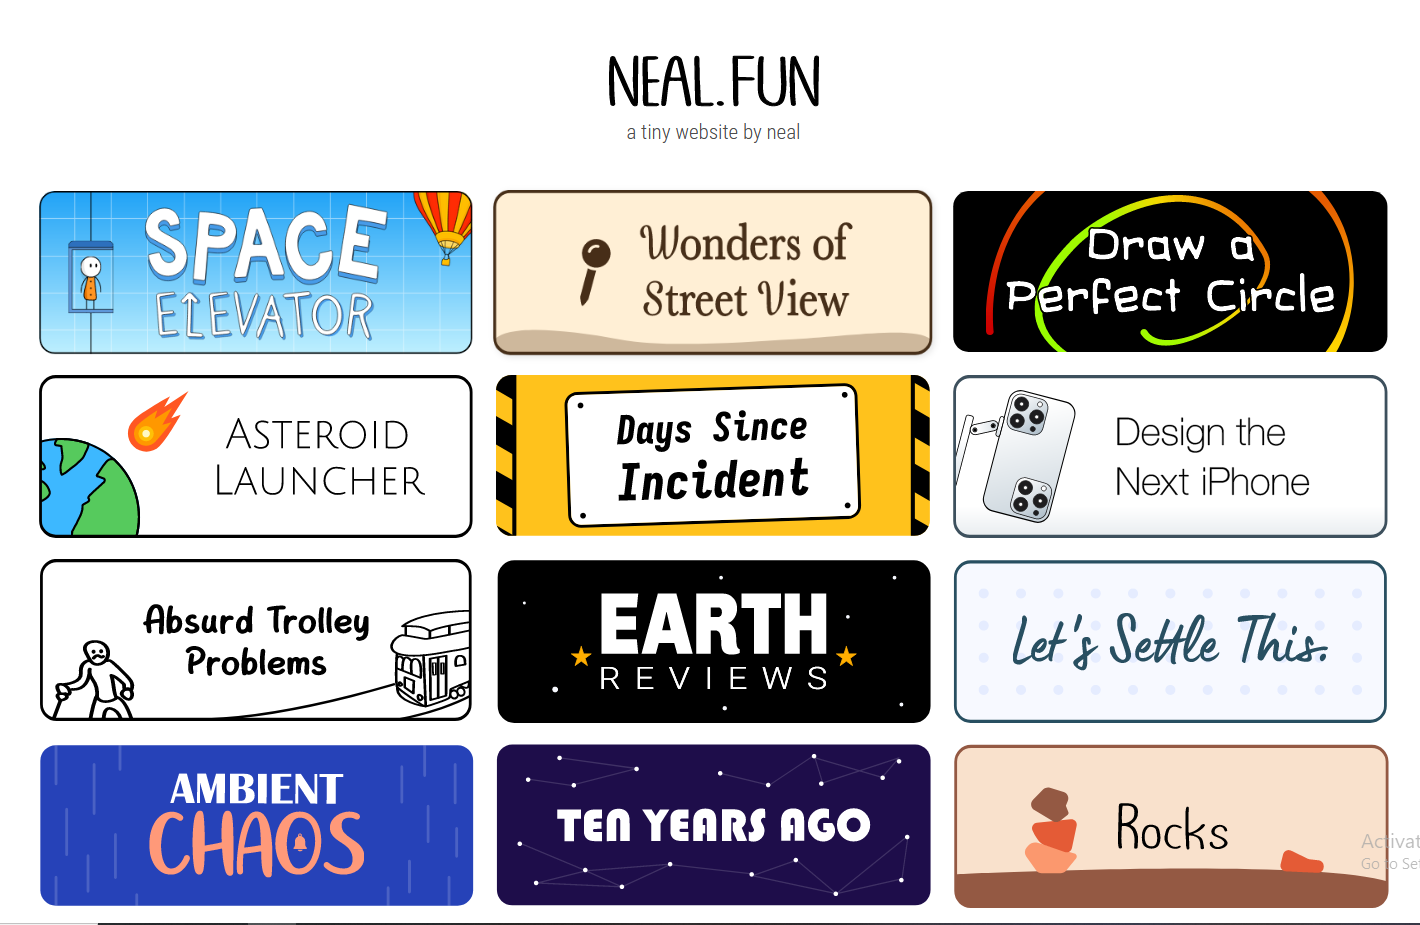 Neal fun. Neal fun Space. Neal fun на русском языке. Neal fun Asteroid Launcher. Neal fun потратьте